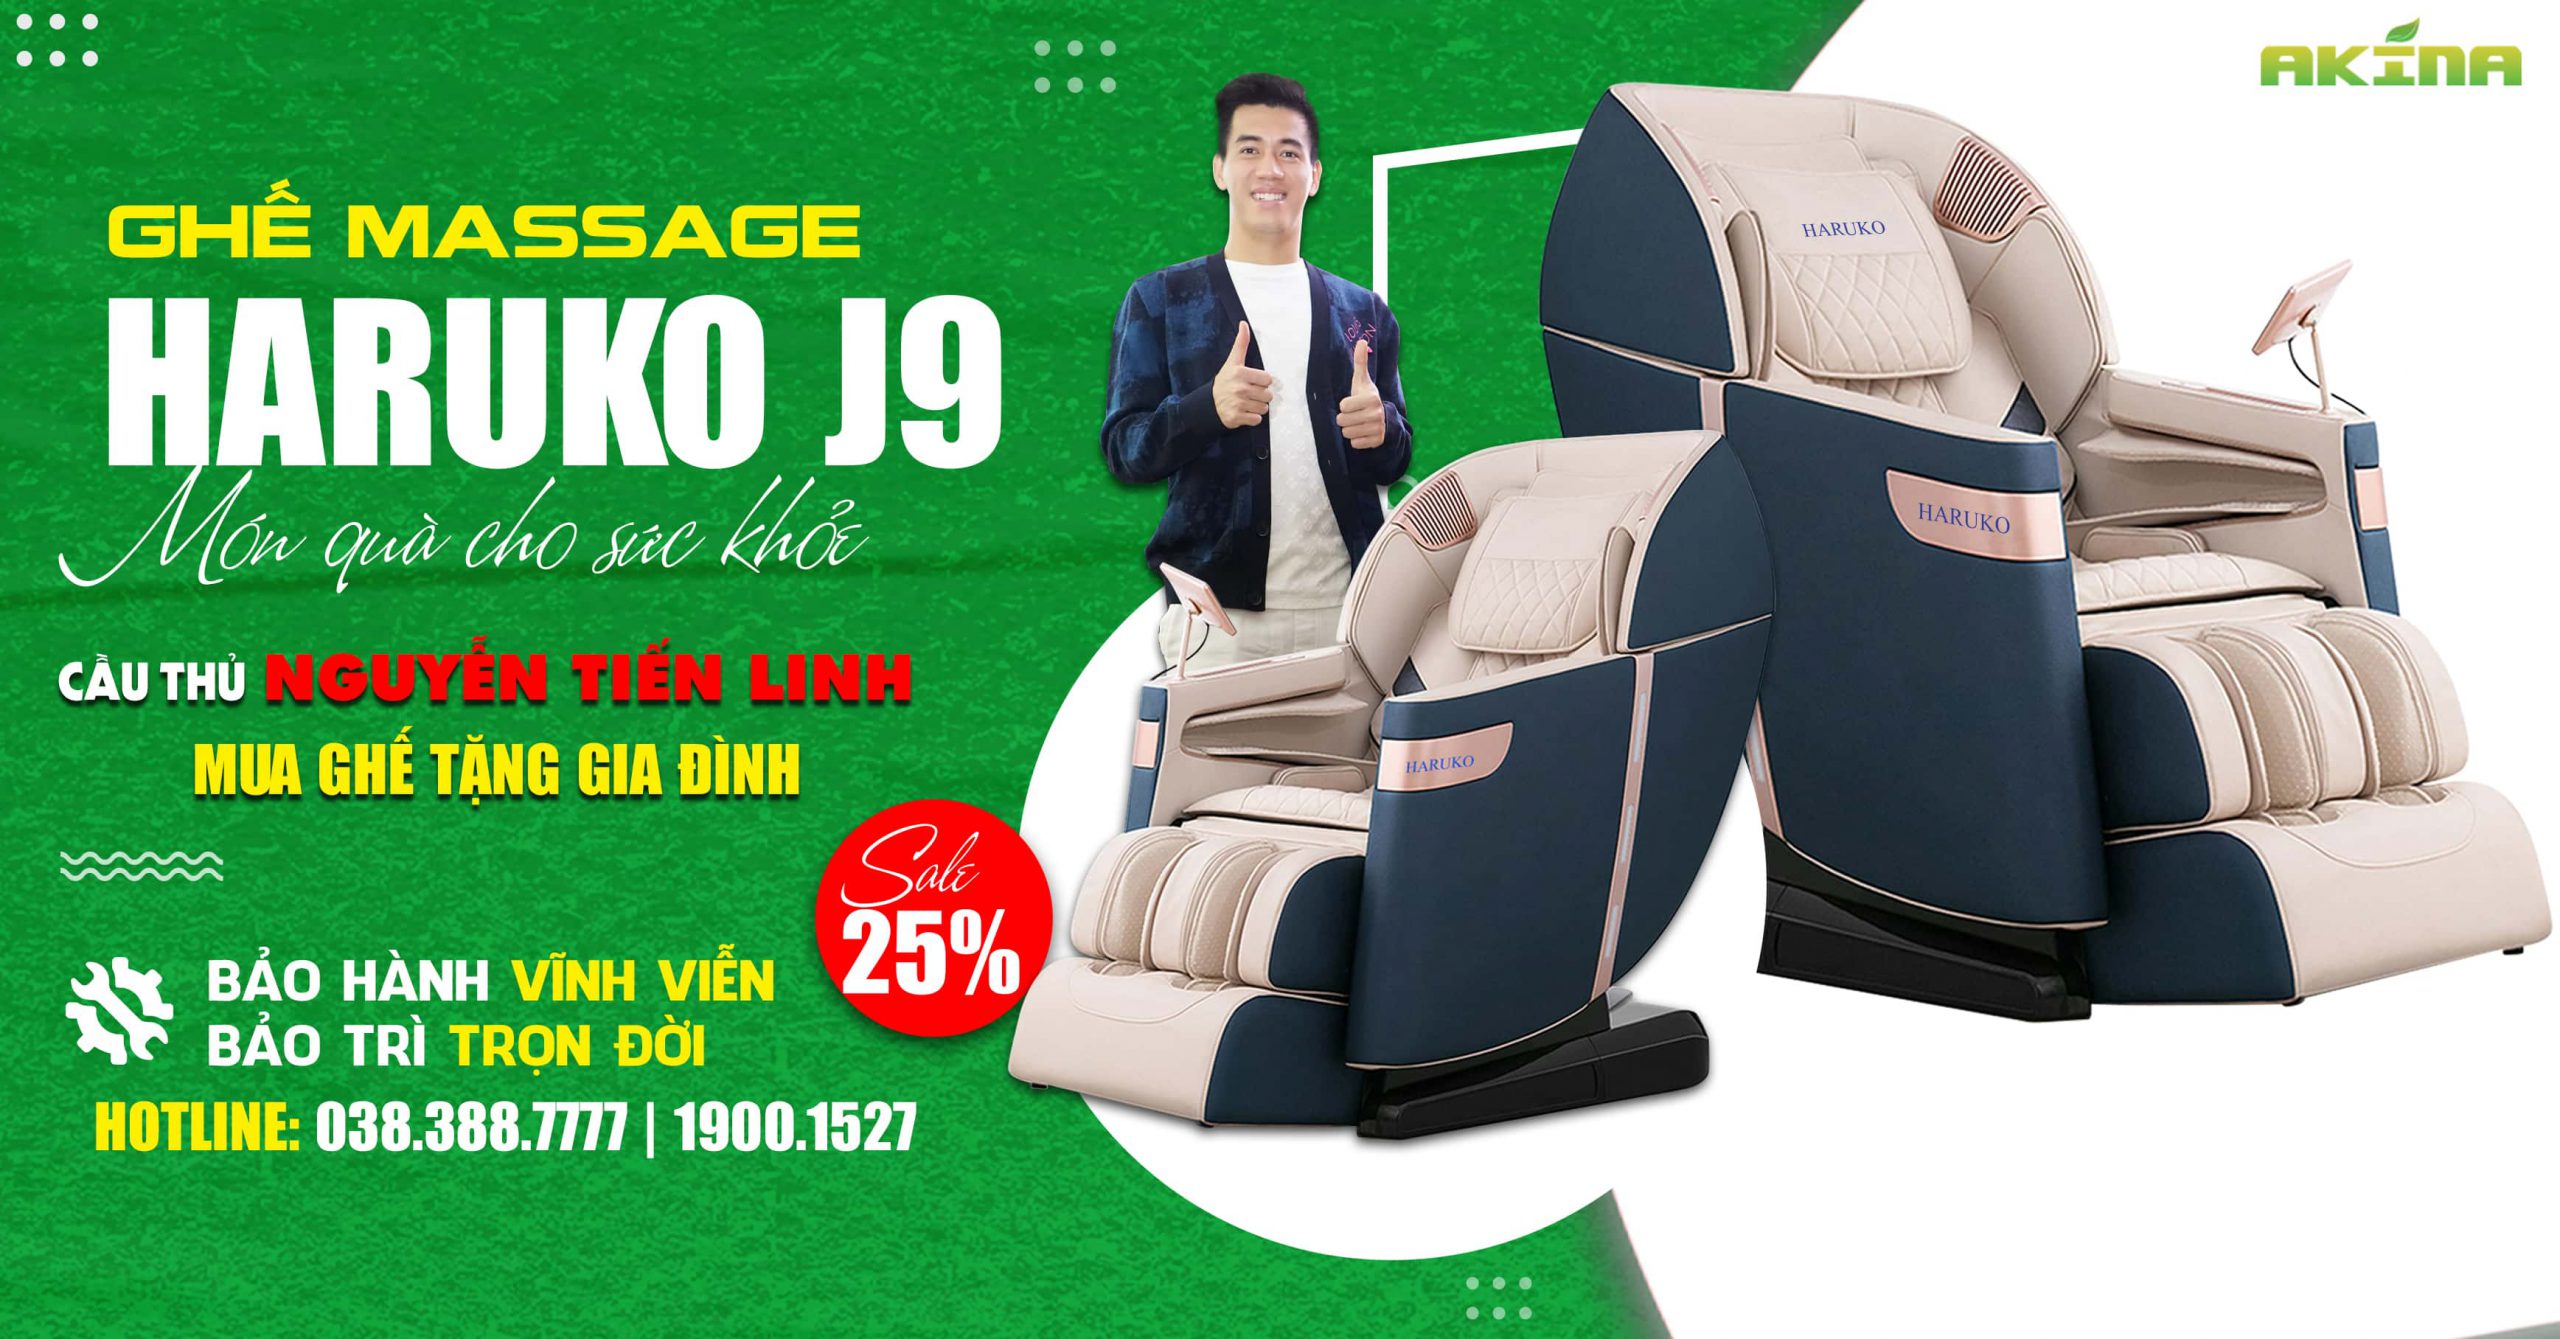 Haruko-J9 với thiết kế sang trọng,bắt mắt là dòng ghế massage mà bất cứ khách hàng nào cũng muốn sở hữu